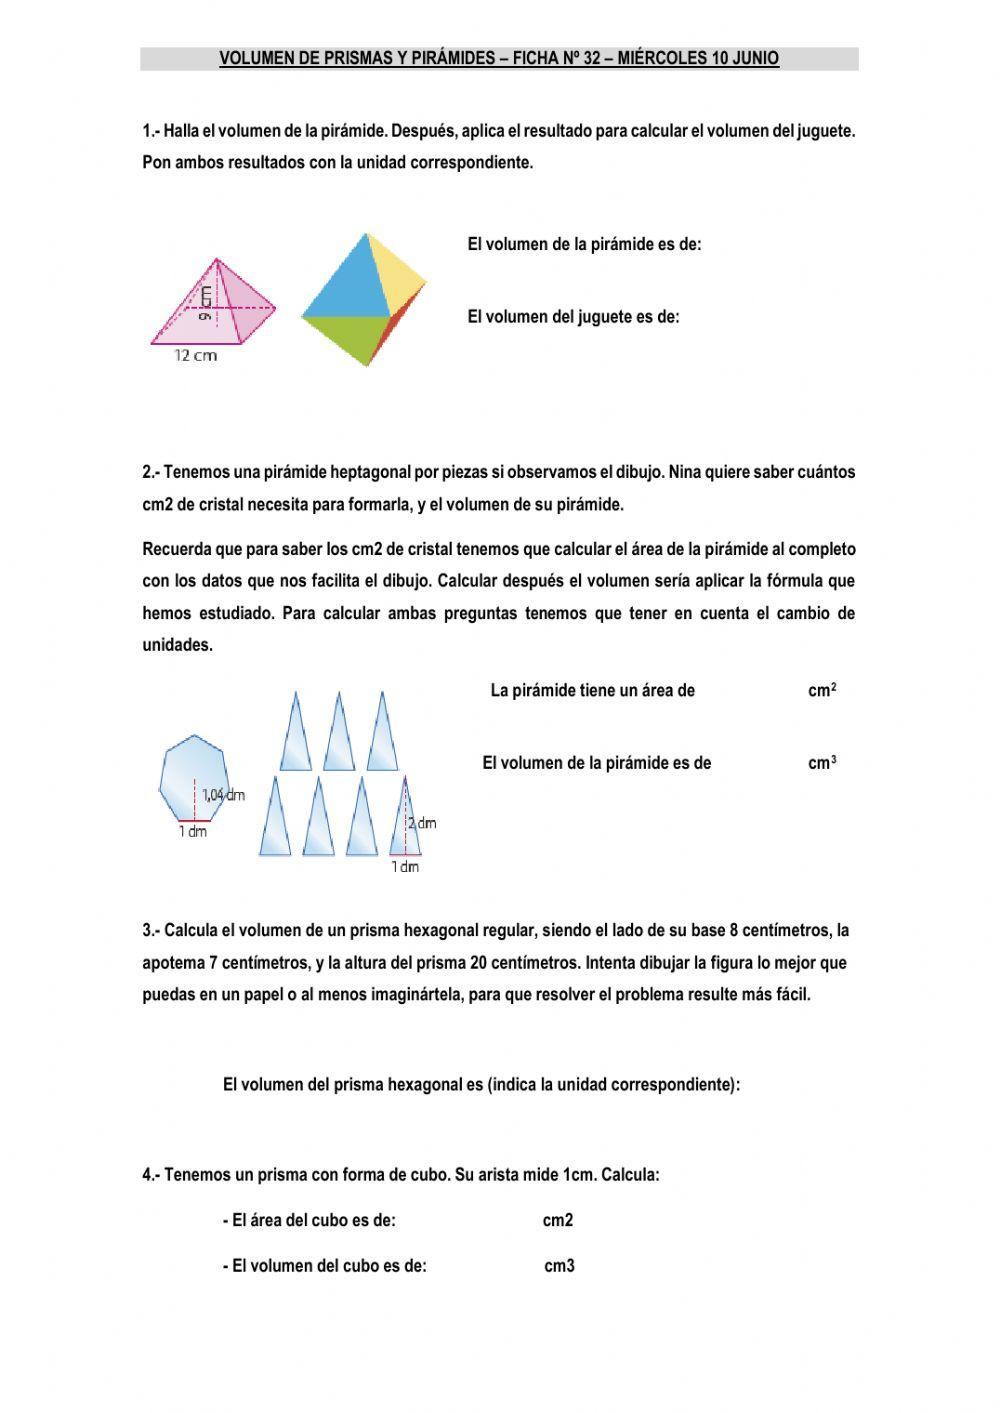 Prismas y pirámides - volúmenes y área